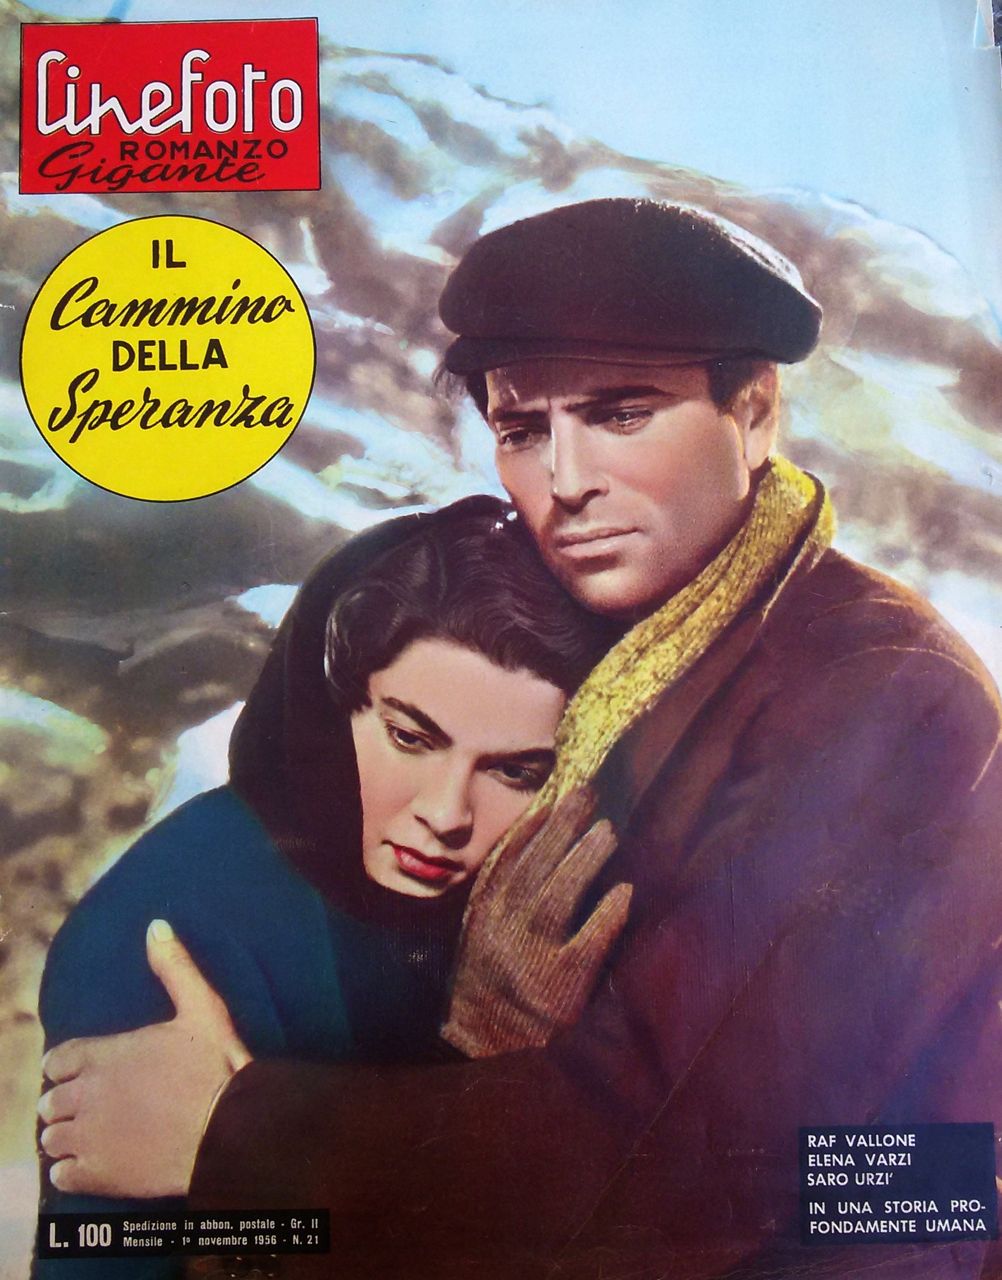 Il cammino della speranza di Pietro Germi – Cineromanzo a fumetti in “Cinefotoromanzo Gigante”, n.21, 1 novembre 1956